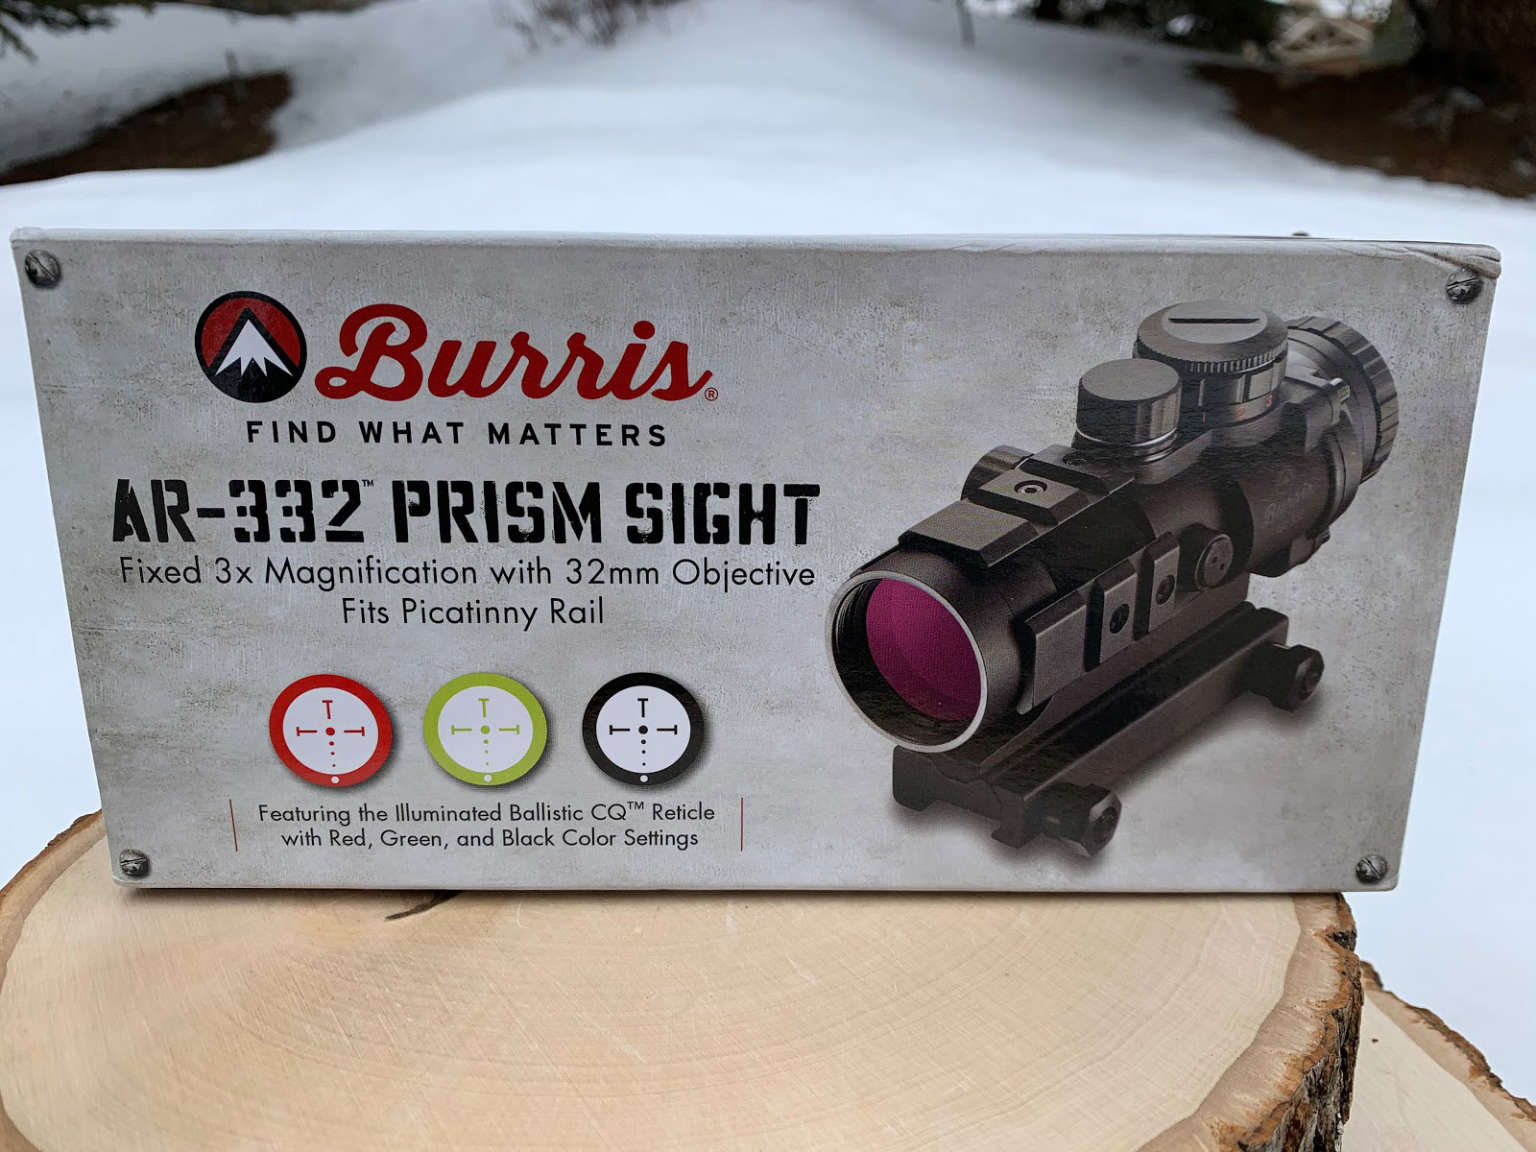 Burris-3X-AR-332_box-1536x1152.jpg